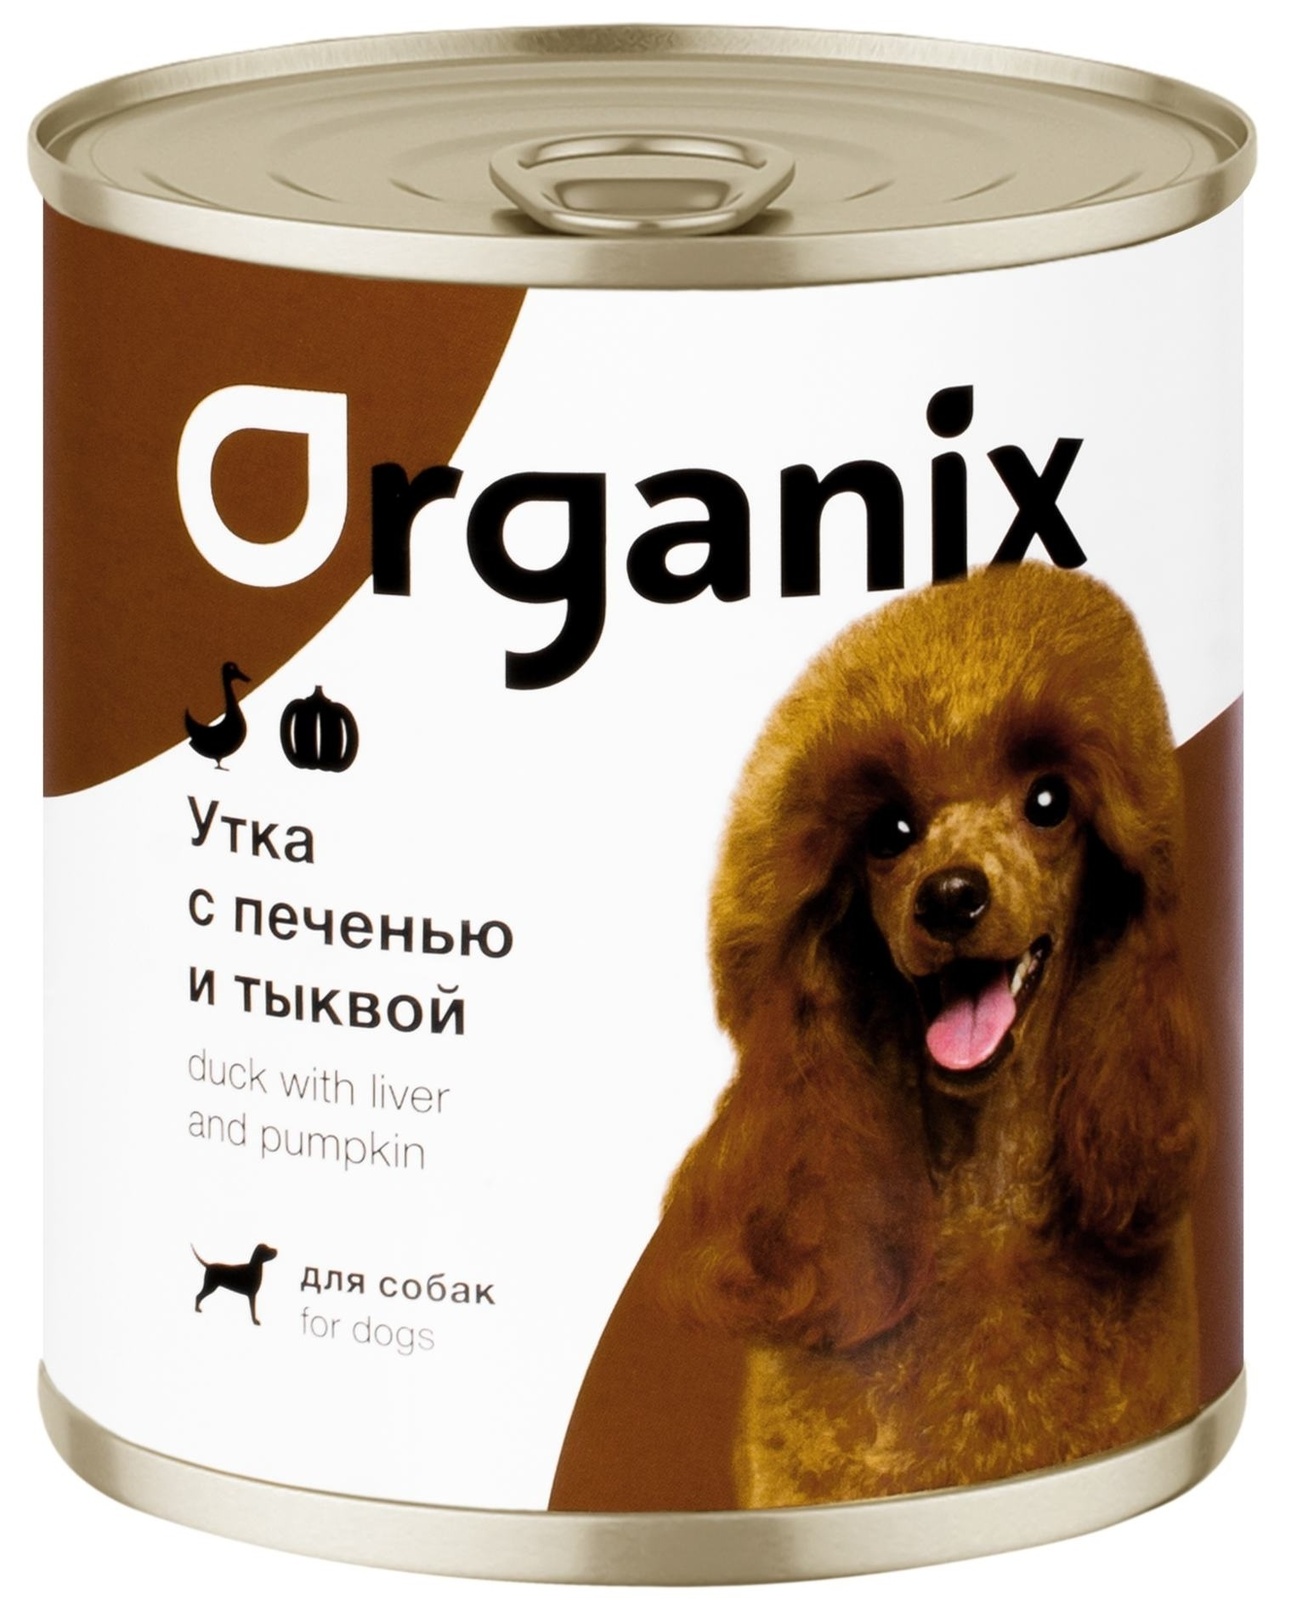 Organix консервы Organix консервы для собак Сочная утка с печенью и тыквой (400 г) organix консервы organix консервы для собак утка индейка картофель 400 г